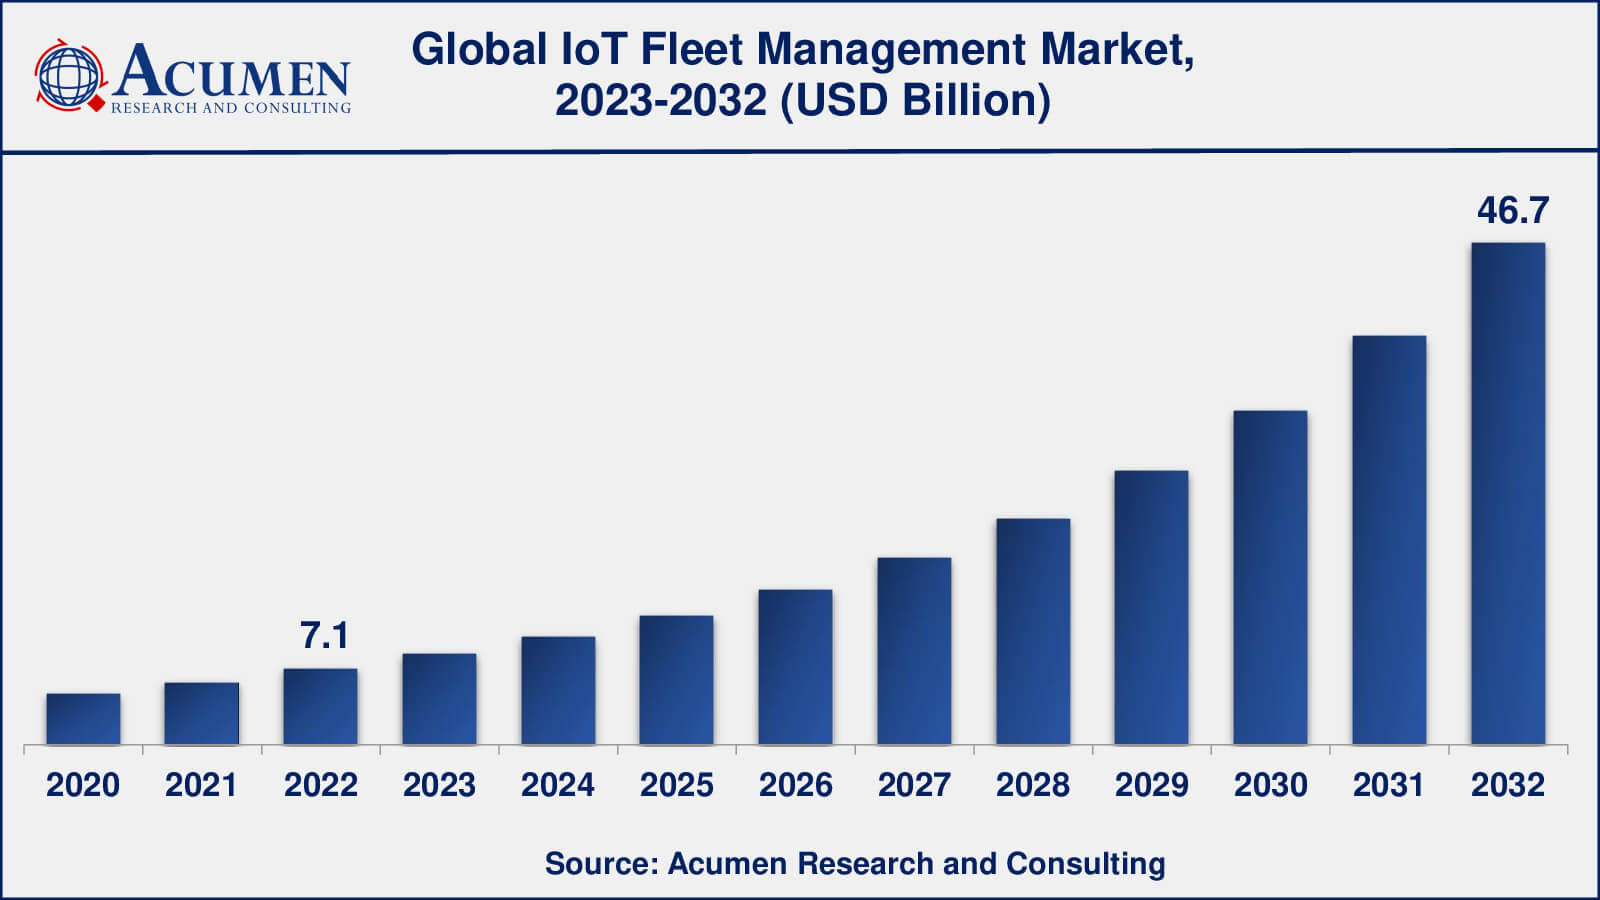 IoT Fleet Management Market Analysis Period